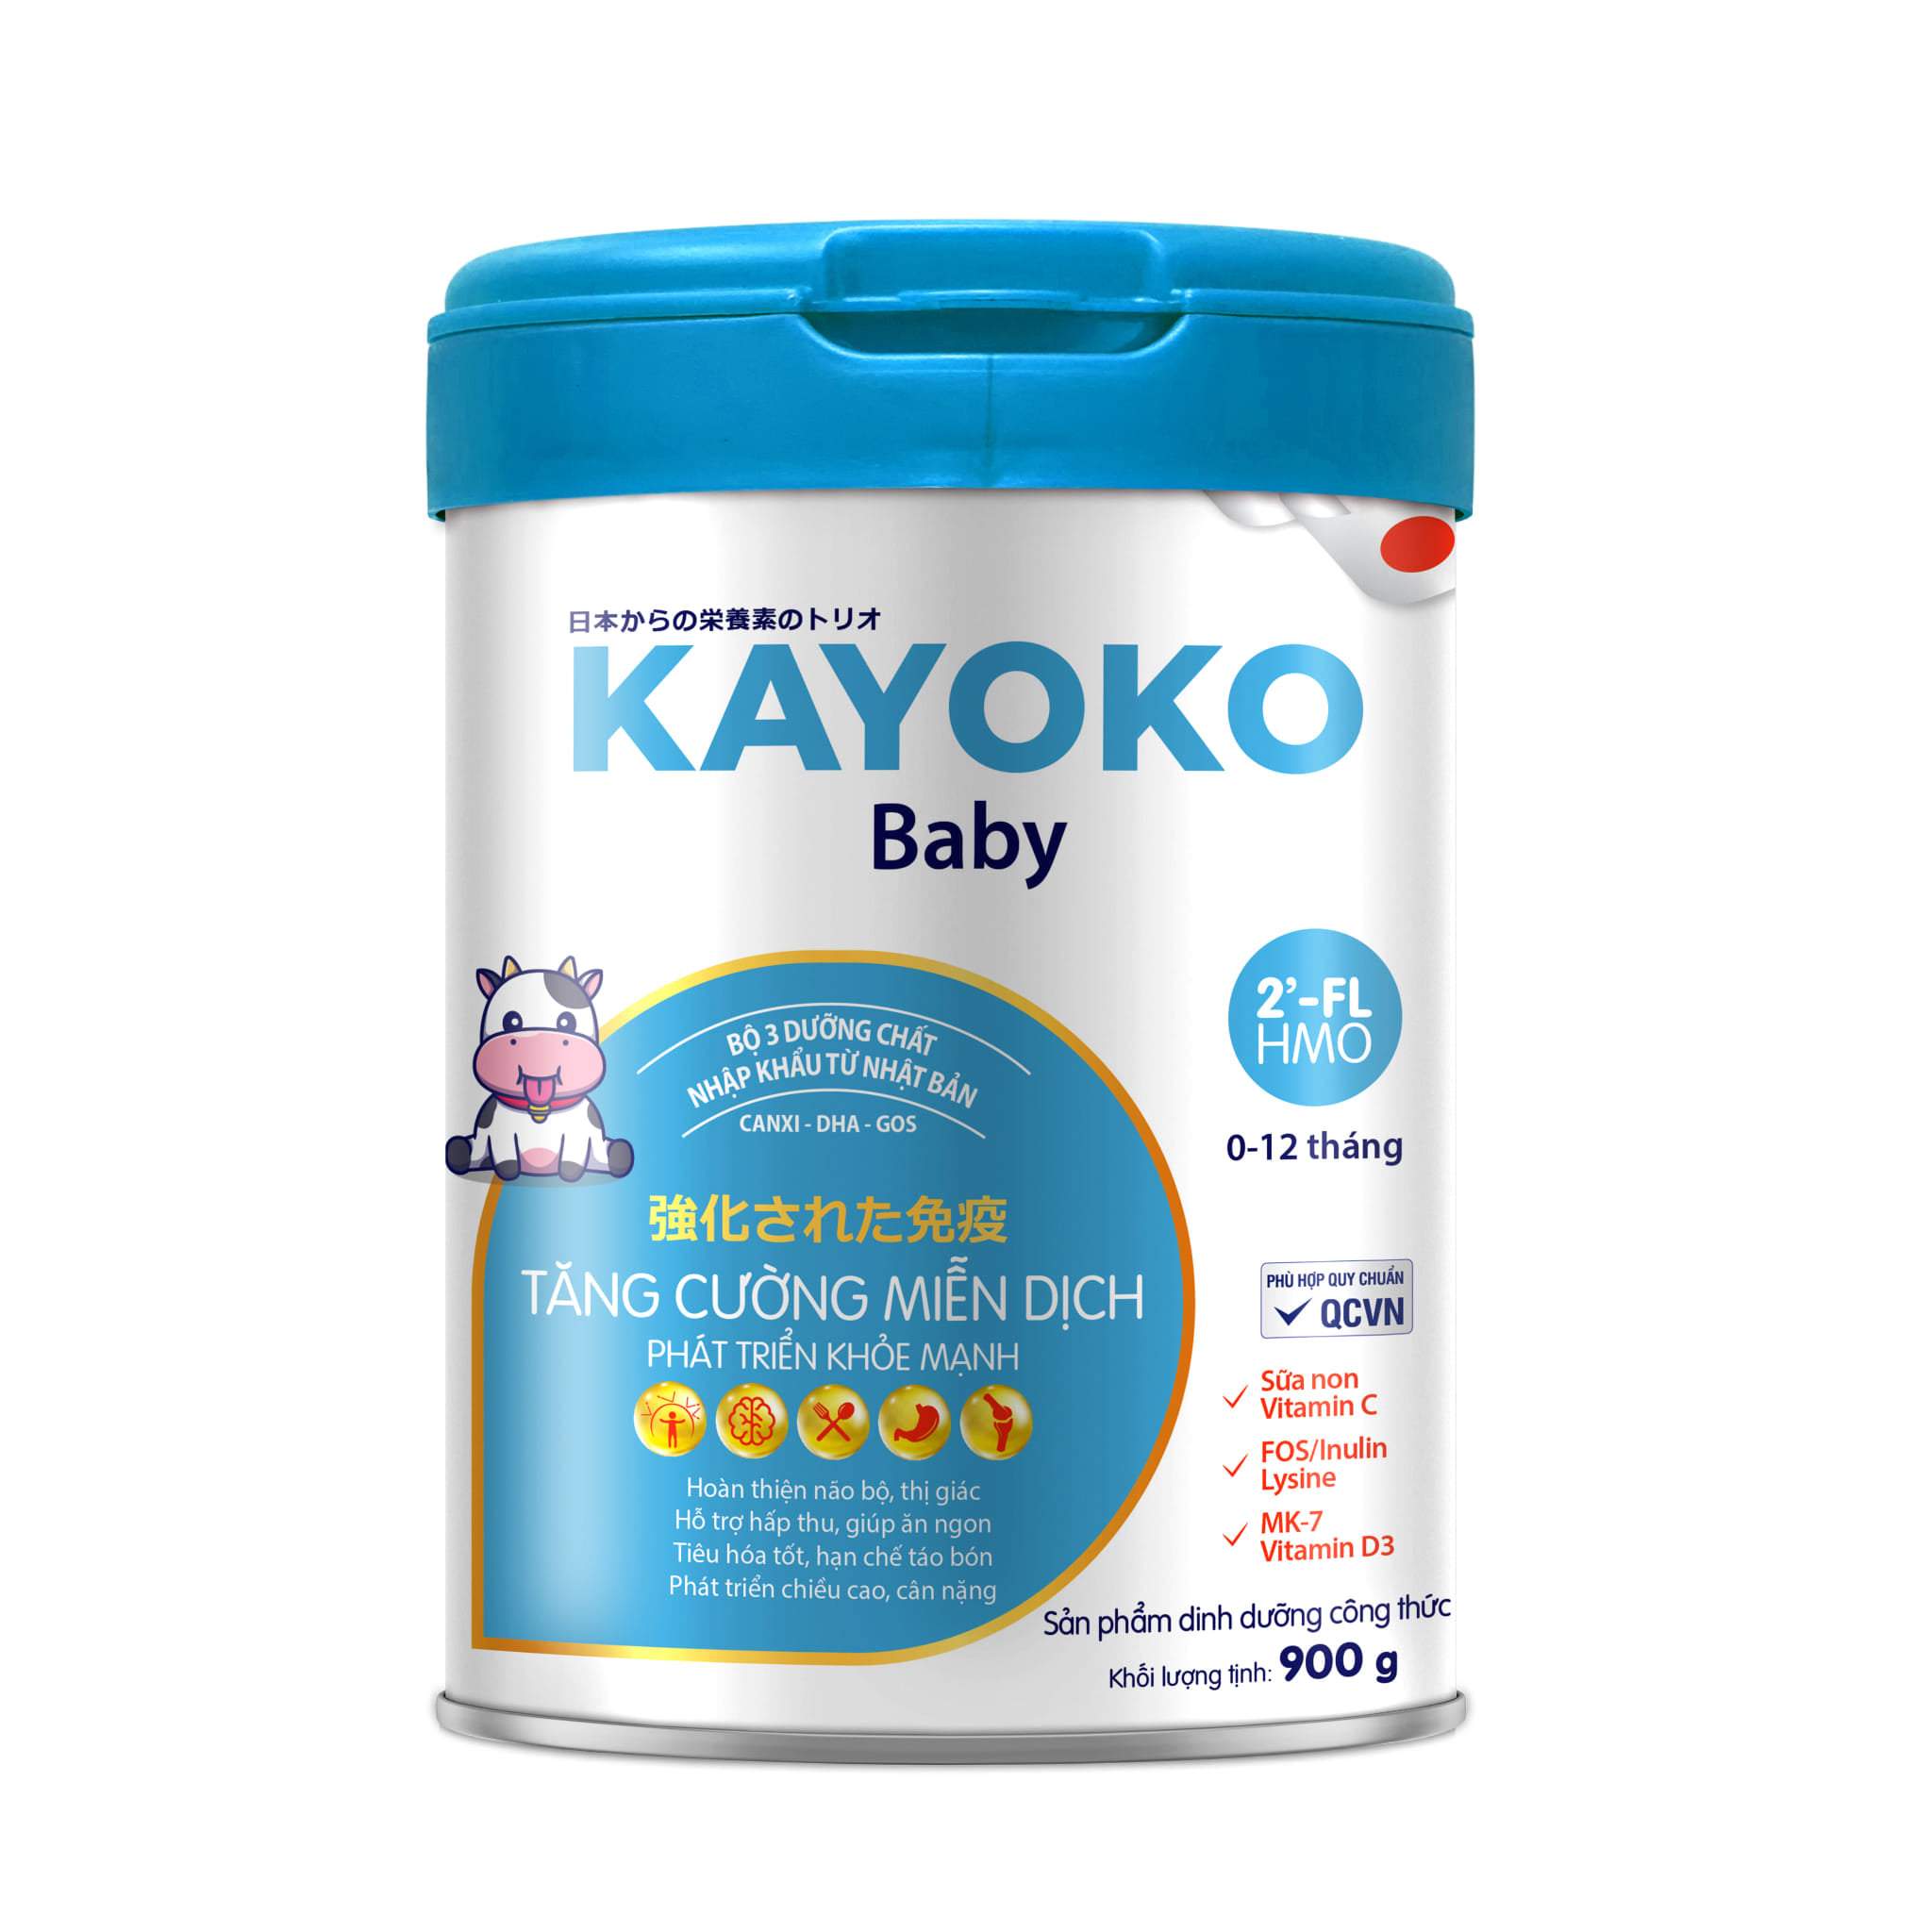 Sữa Kayoko Baby Công Nghệ Nhật date mới